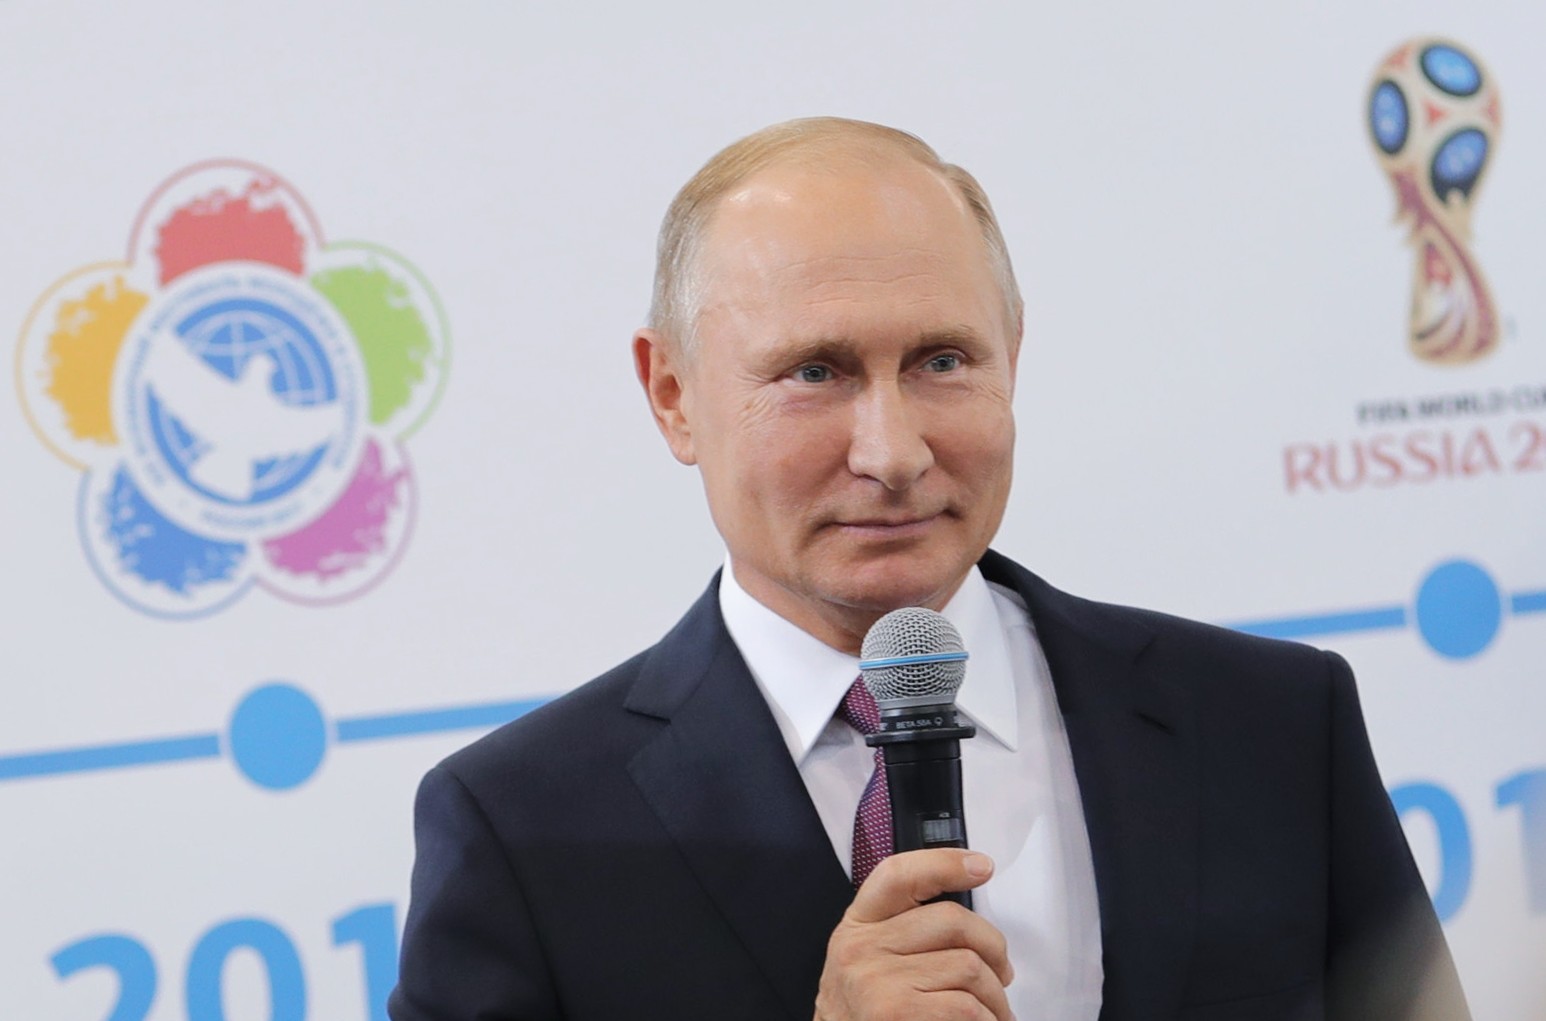 Владимир Путин. Фото © РИА "Новости" / Михаил Климентьев
